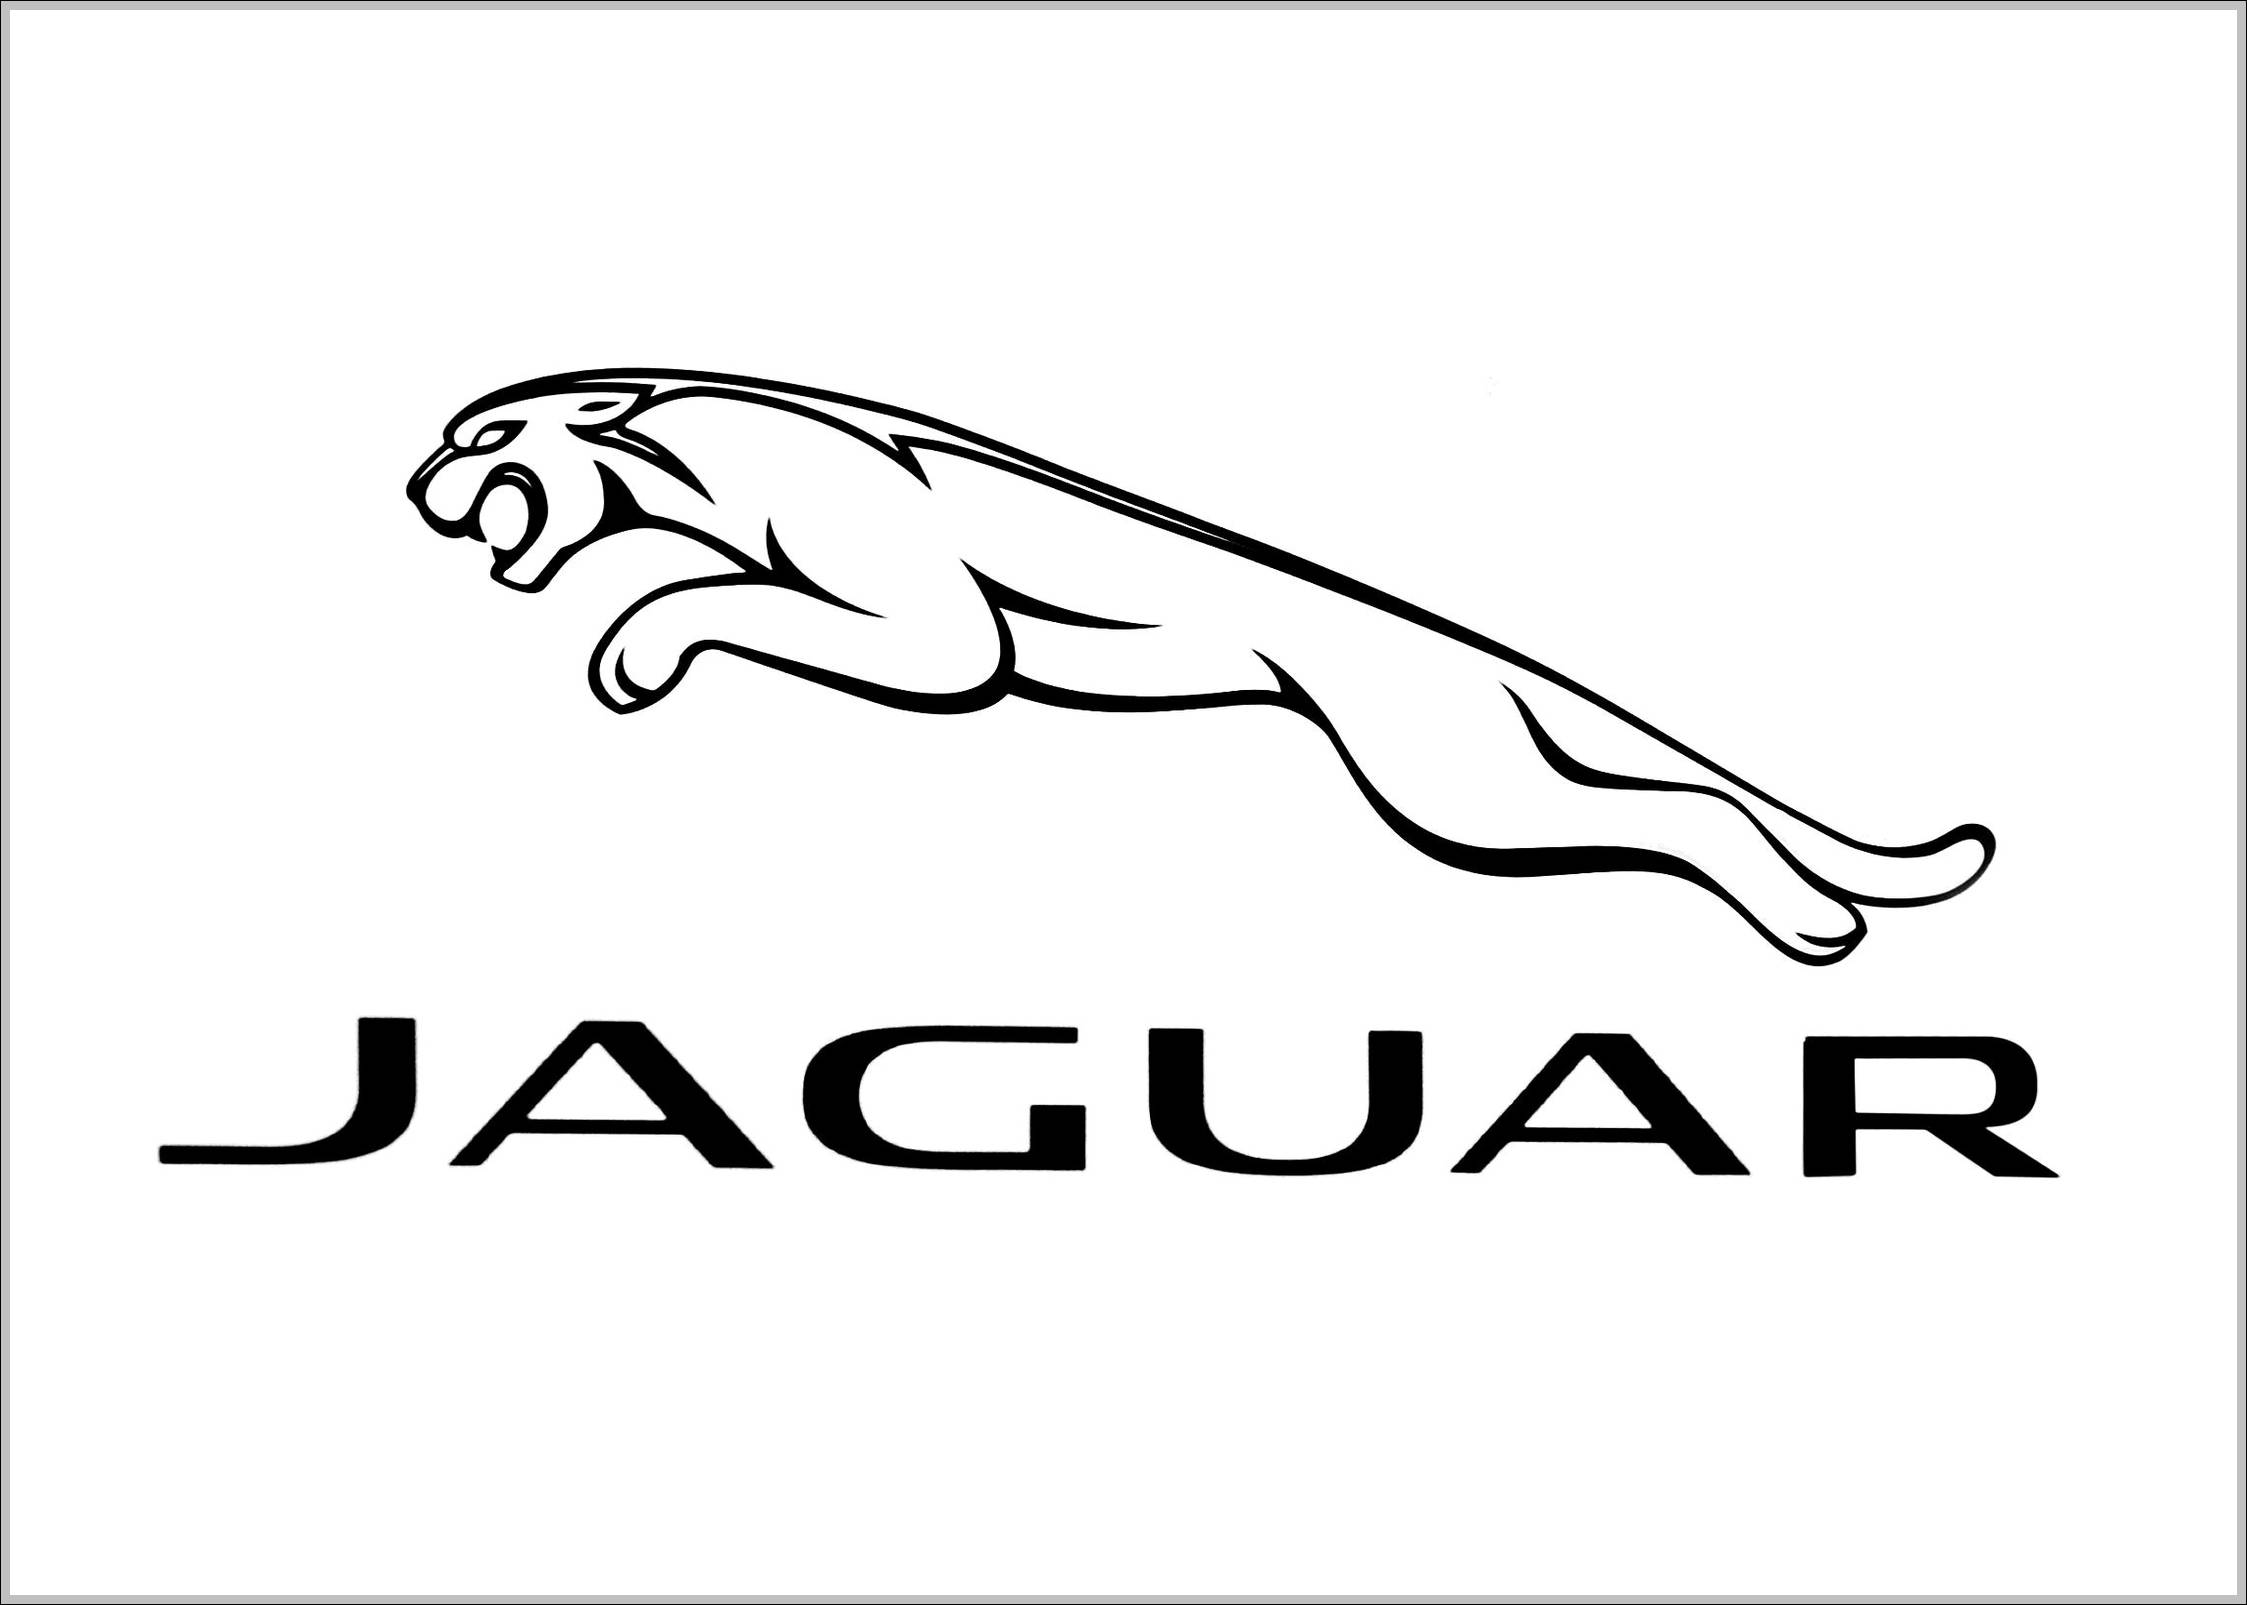 Jaguar logo 2012 outline